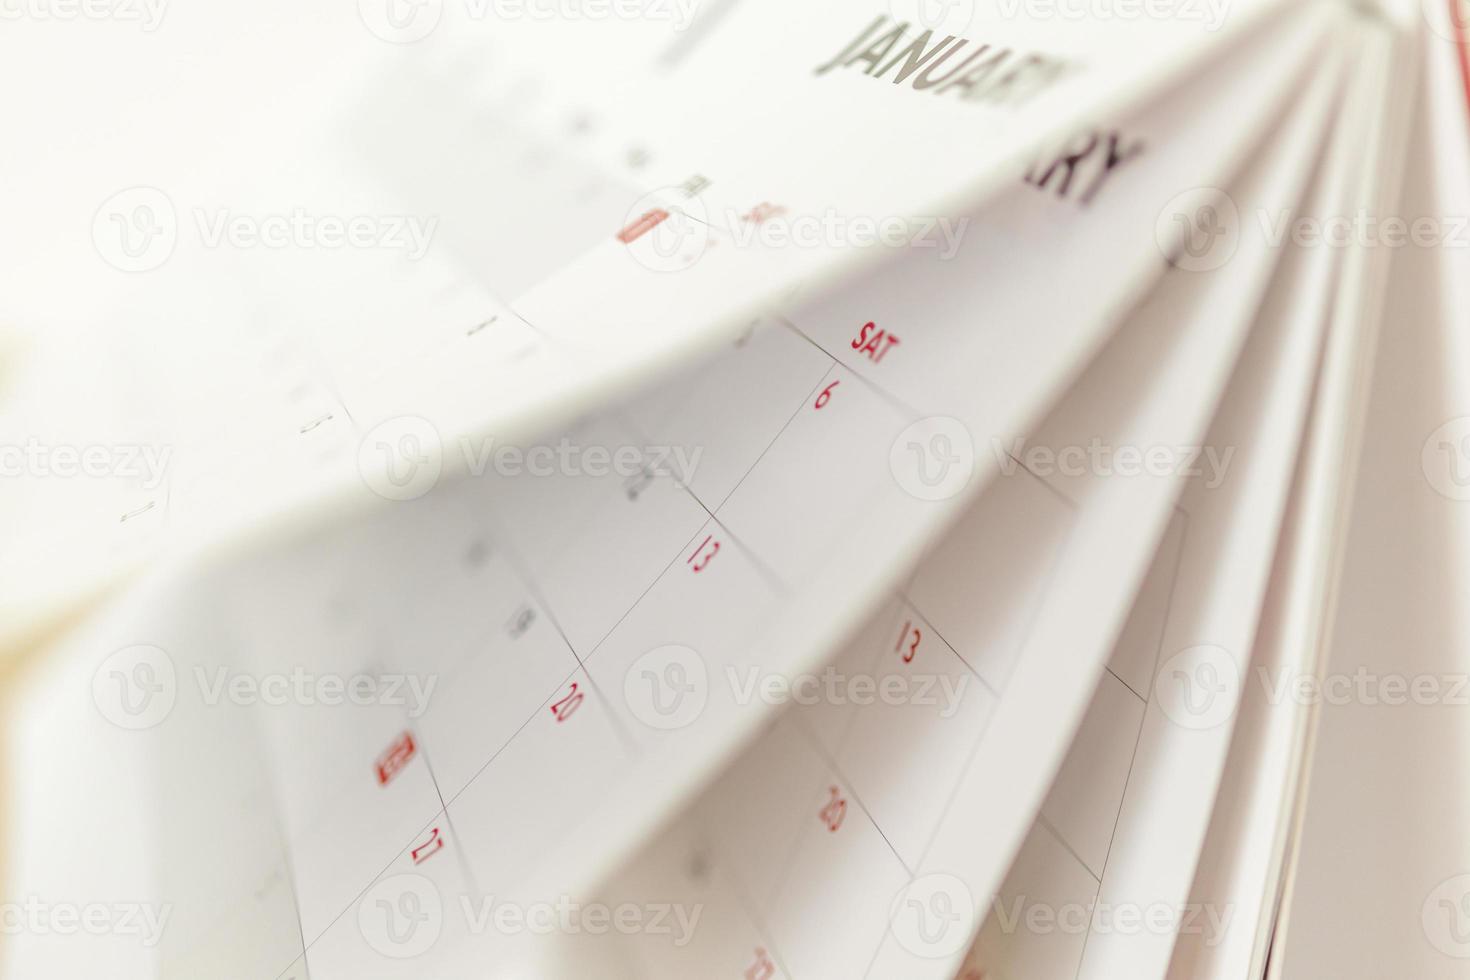 kalenderseite spiegeln blatt nahaufnahme verwischen hintergrund business zeitplan planung termin treffen konzept foto